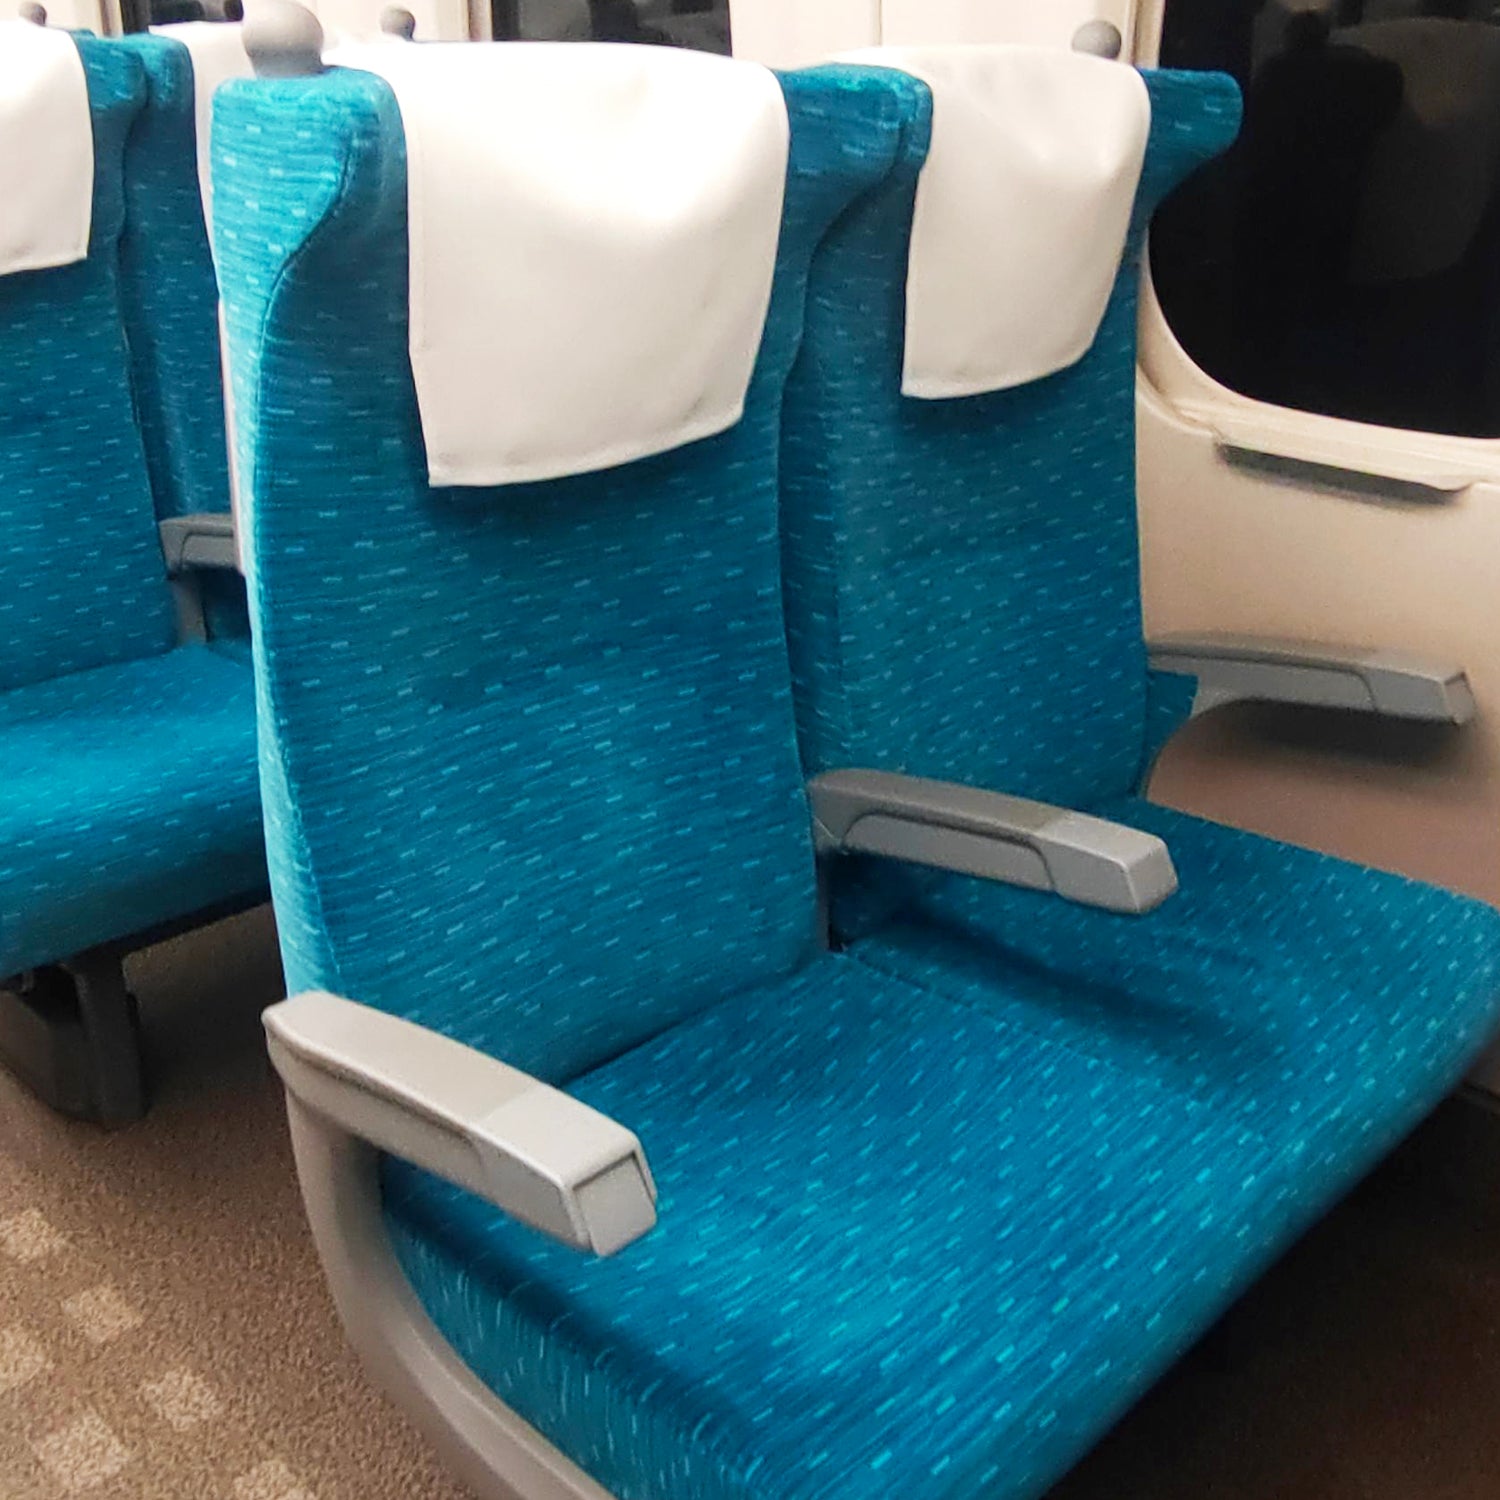 N700A東海道新幹線モケットポーチの本体素材には、N700A東海道新幹線の座席から取り出された生地を採用しています。